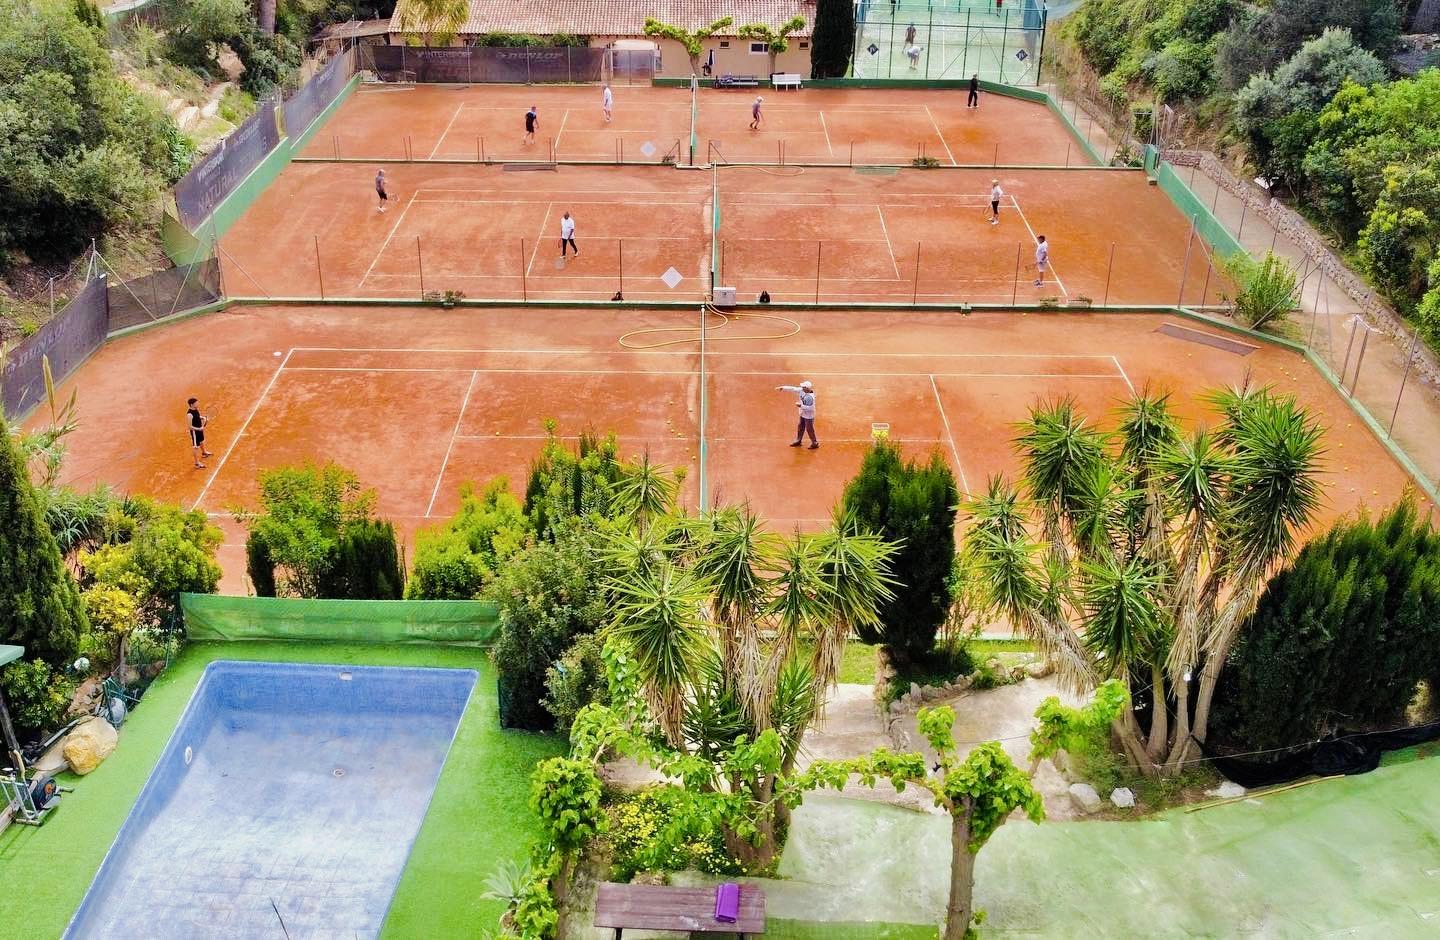 Buena Vista tenis 10